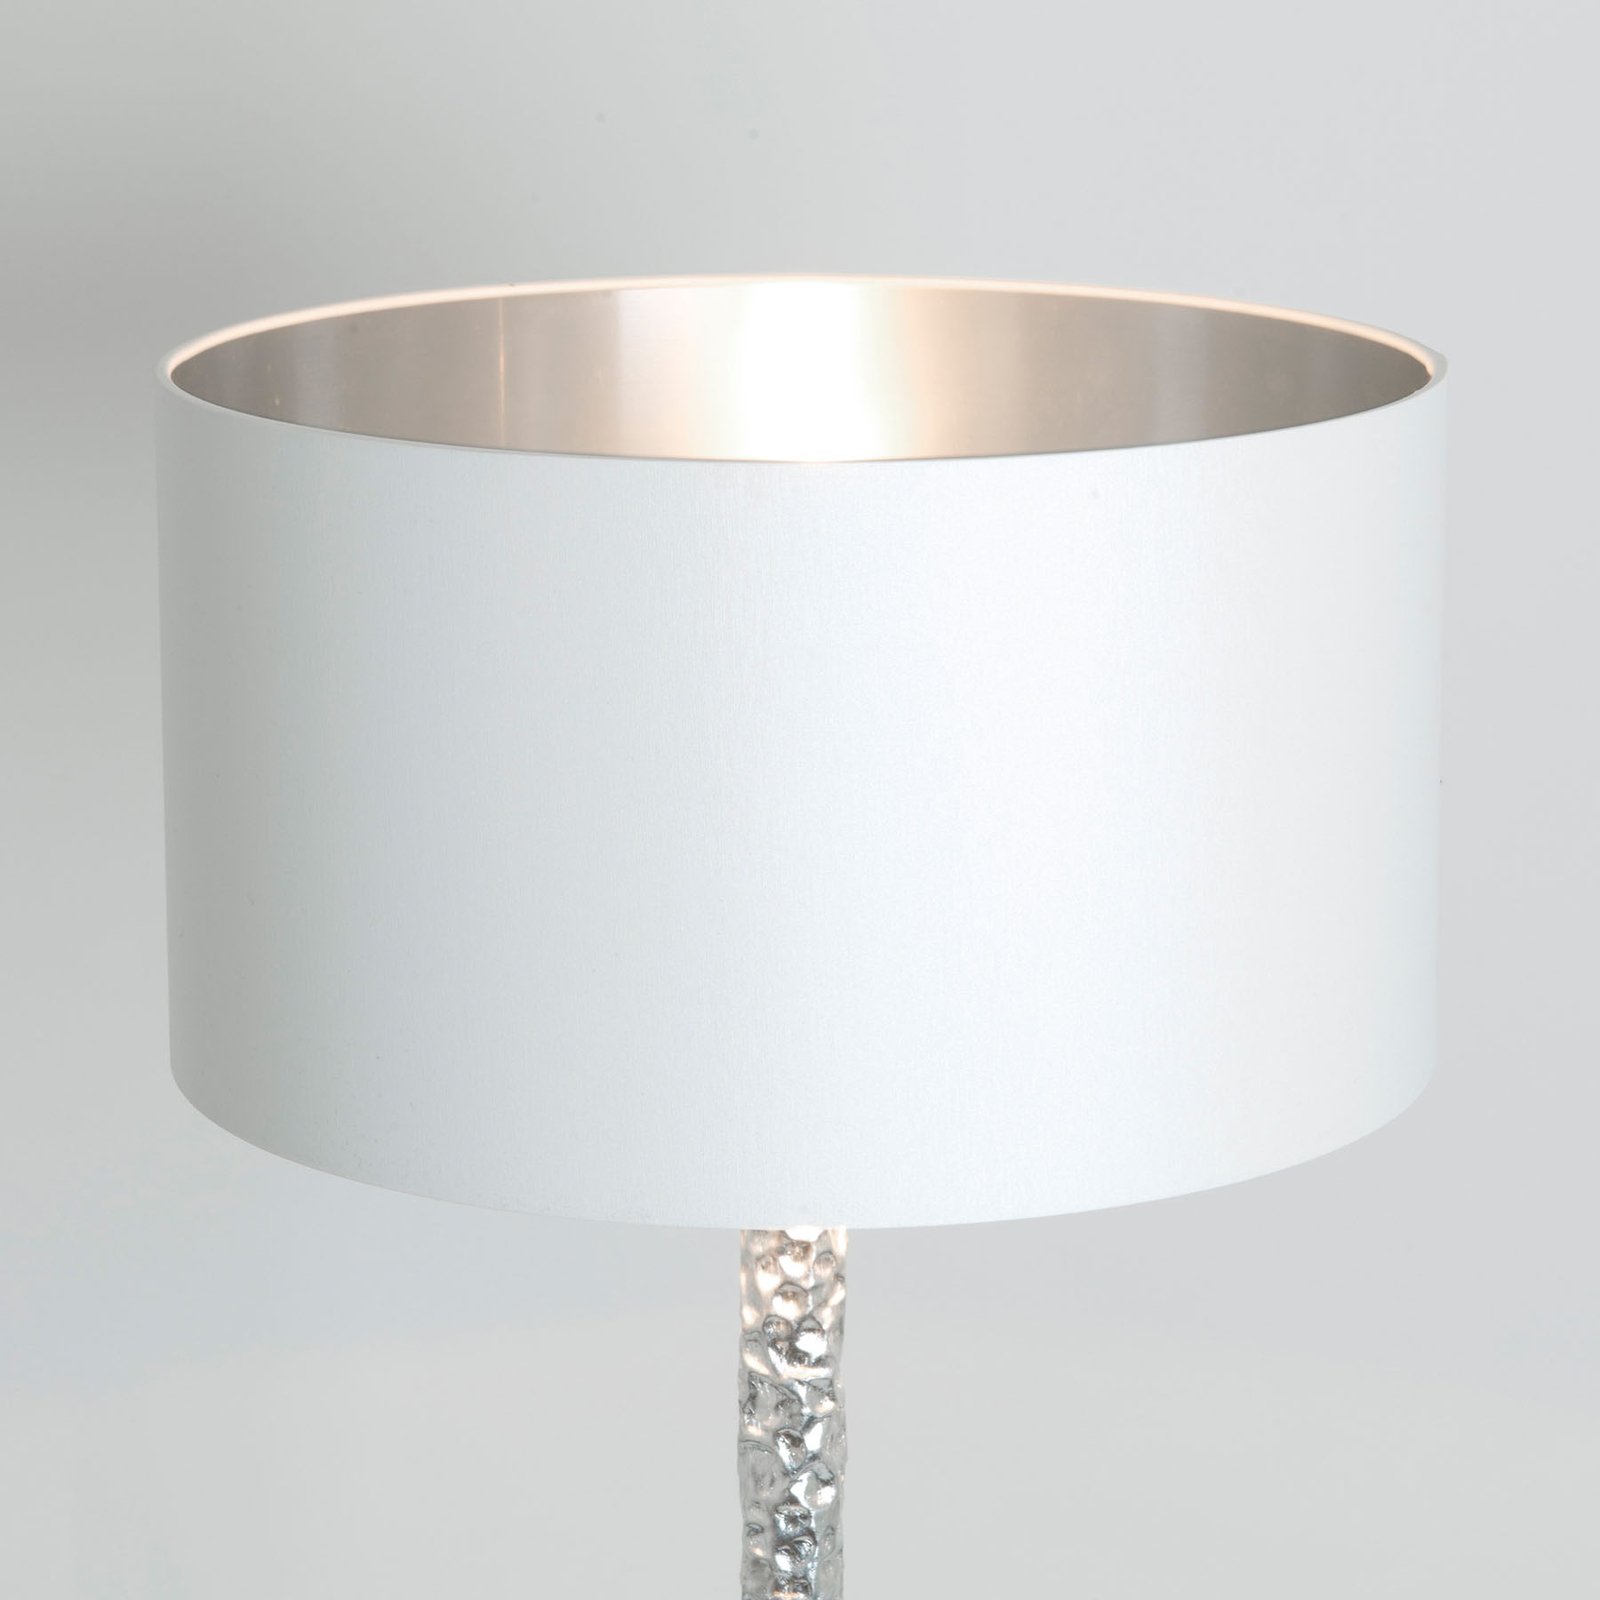 Cancelliere Rotonda silk floor lamp white/silver